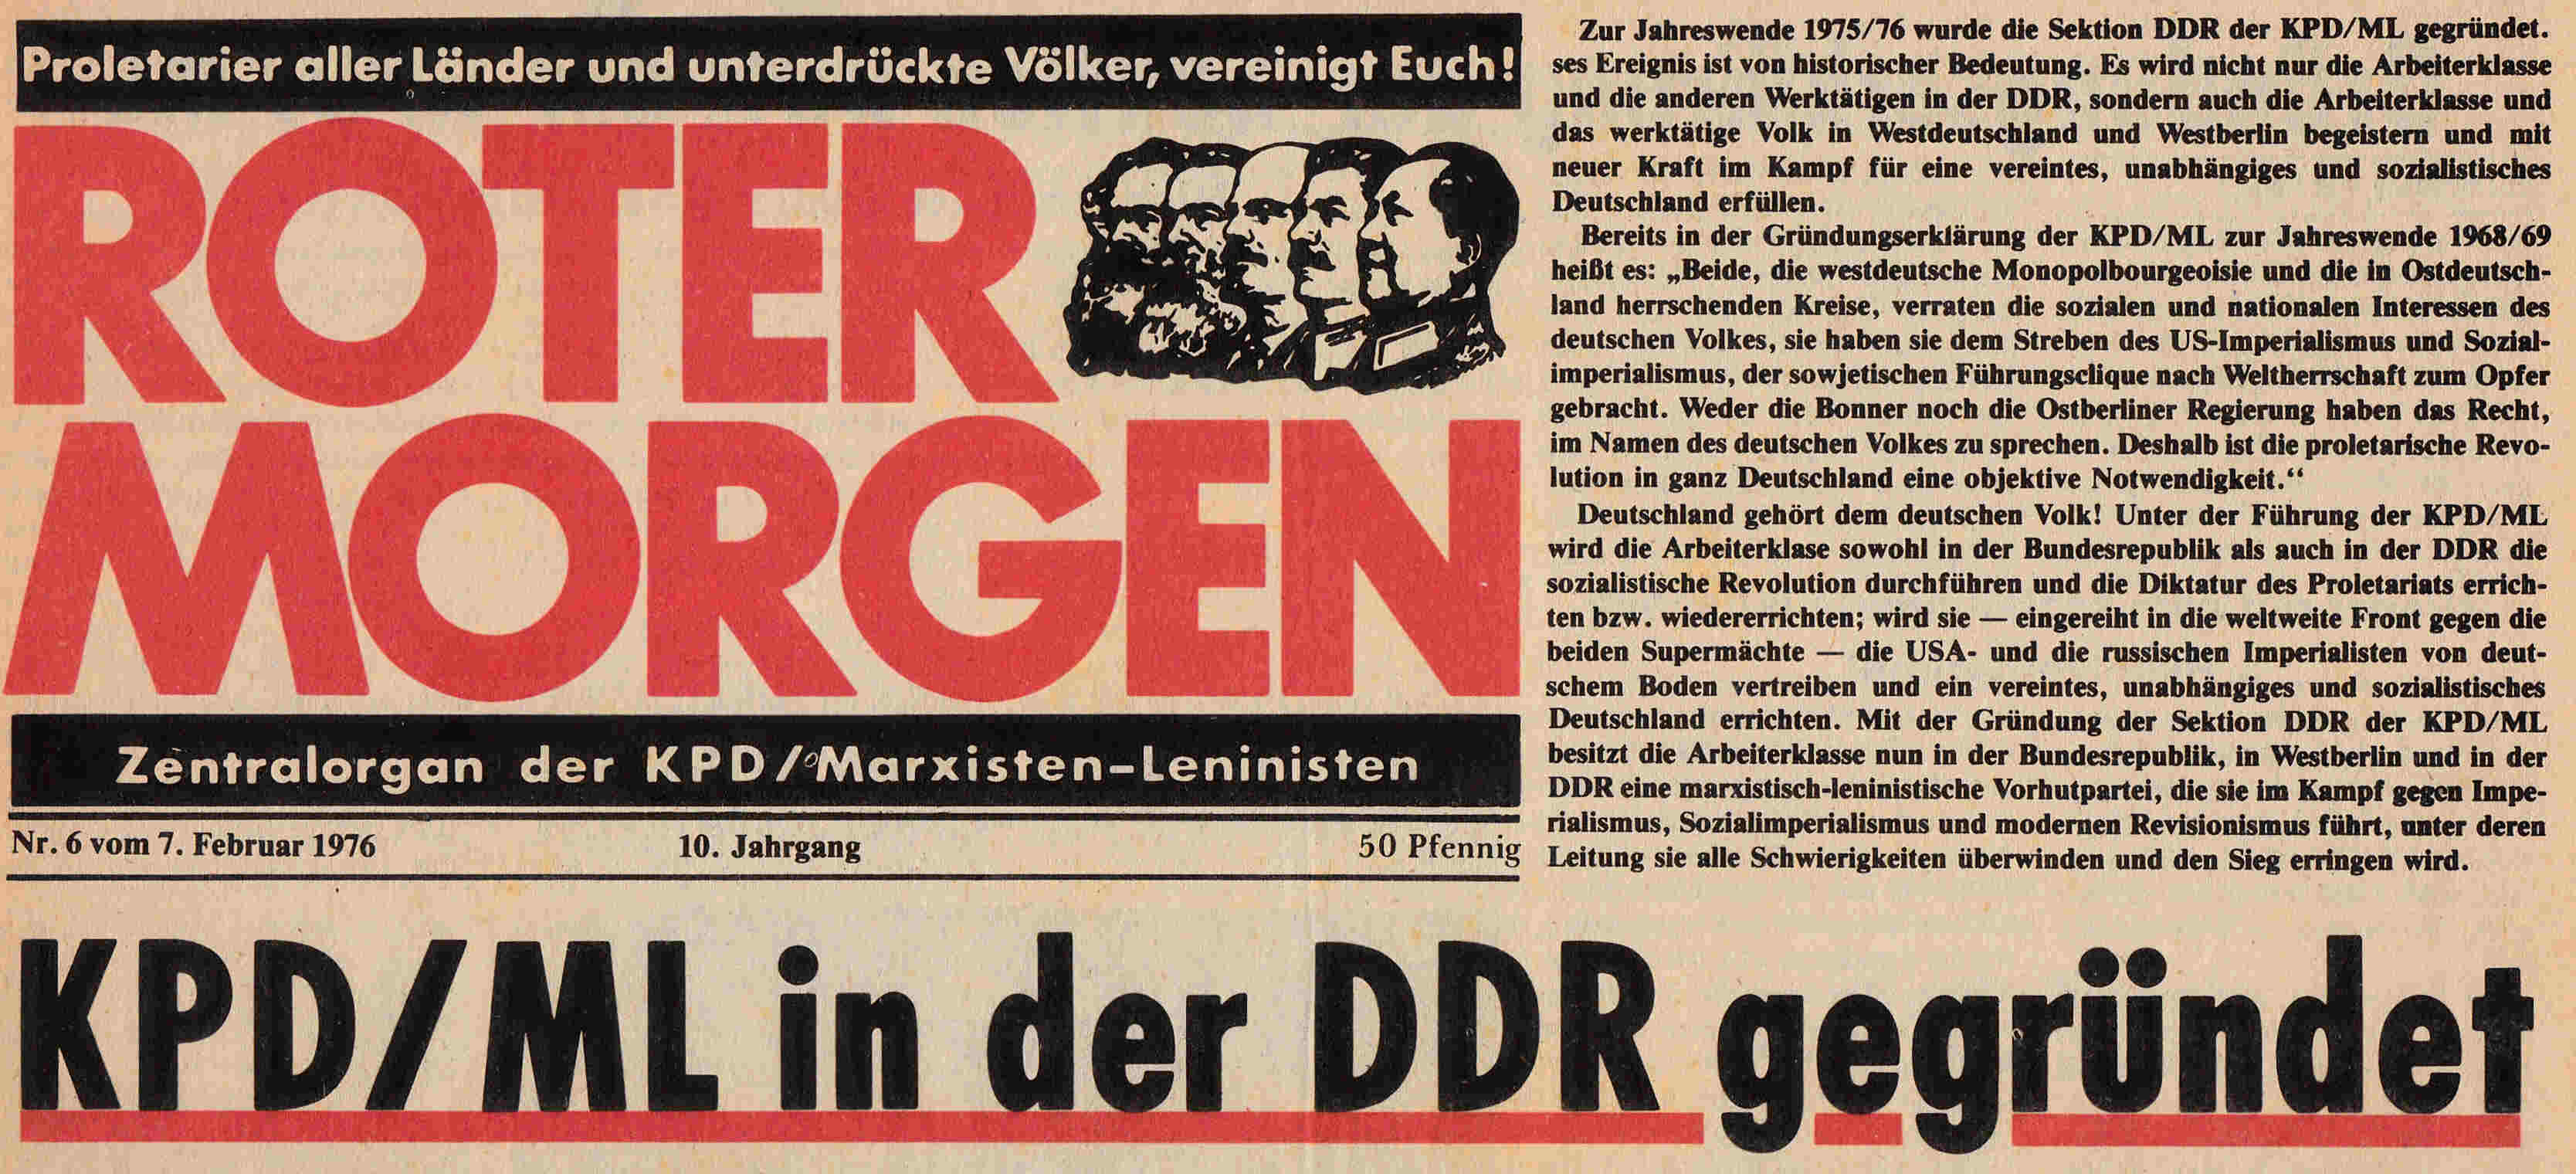 Das Zentralorgan der KPD/ML Roter Morgen verkündet die Gründung der KPD/ML in der DDR